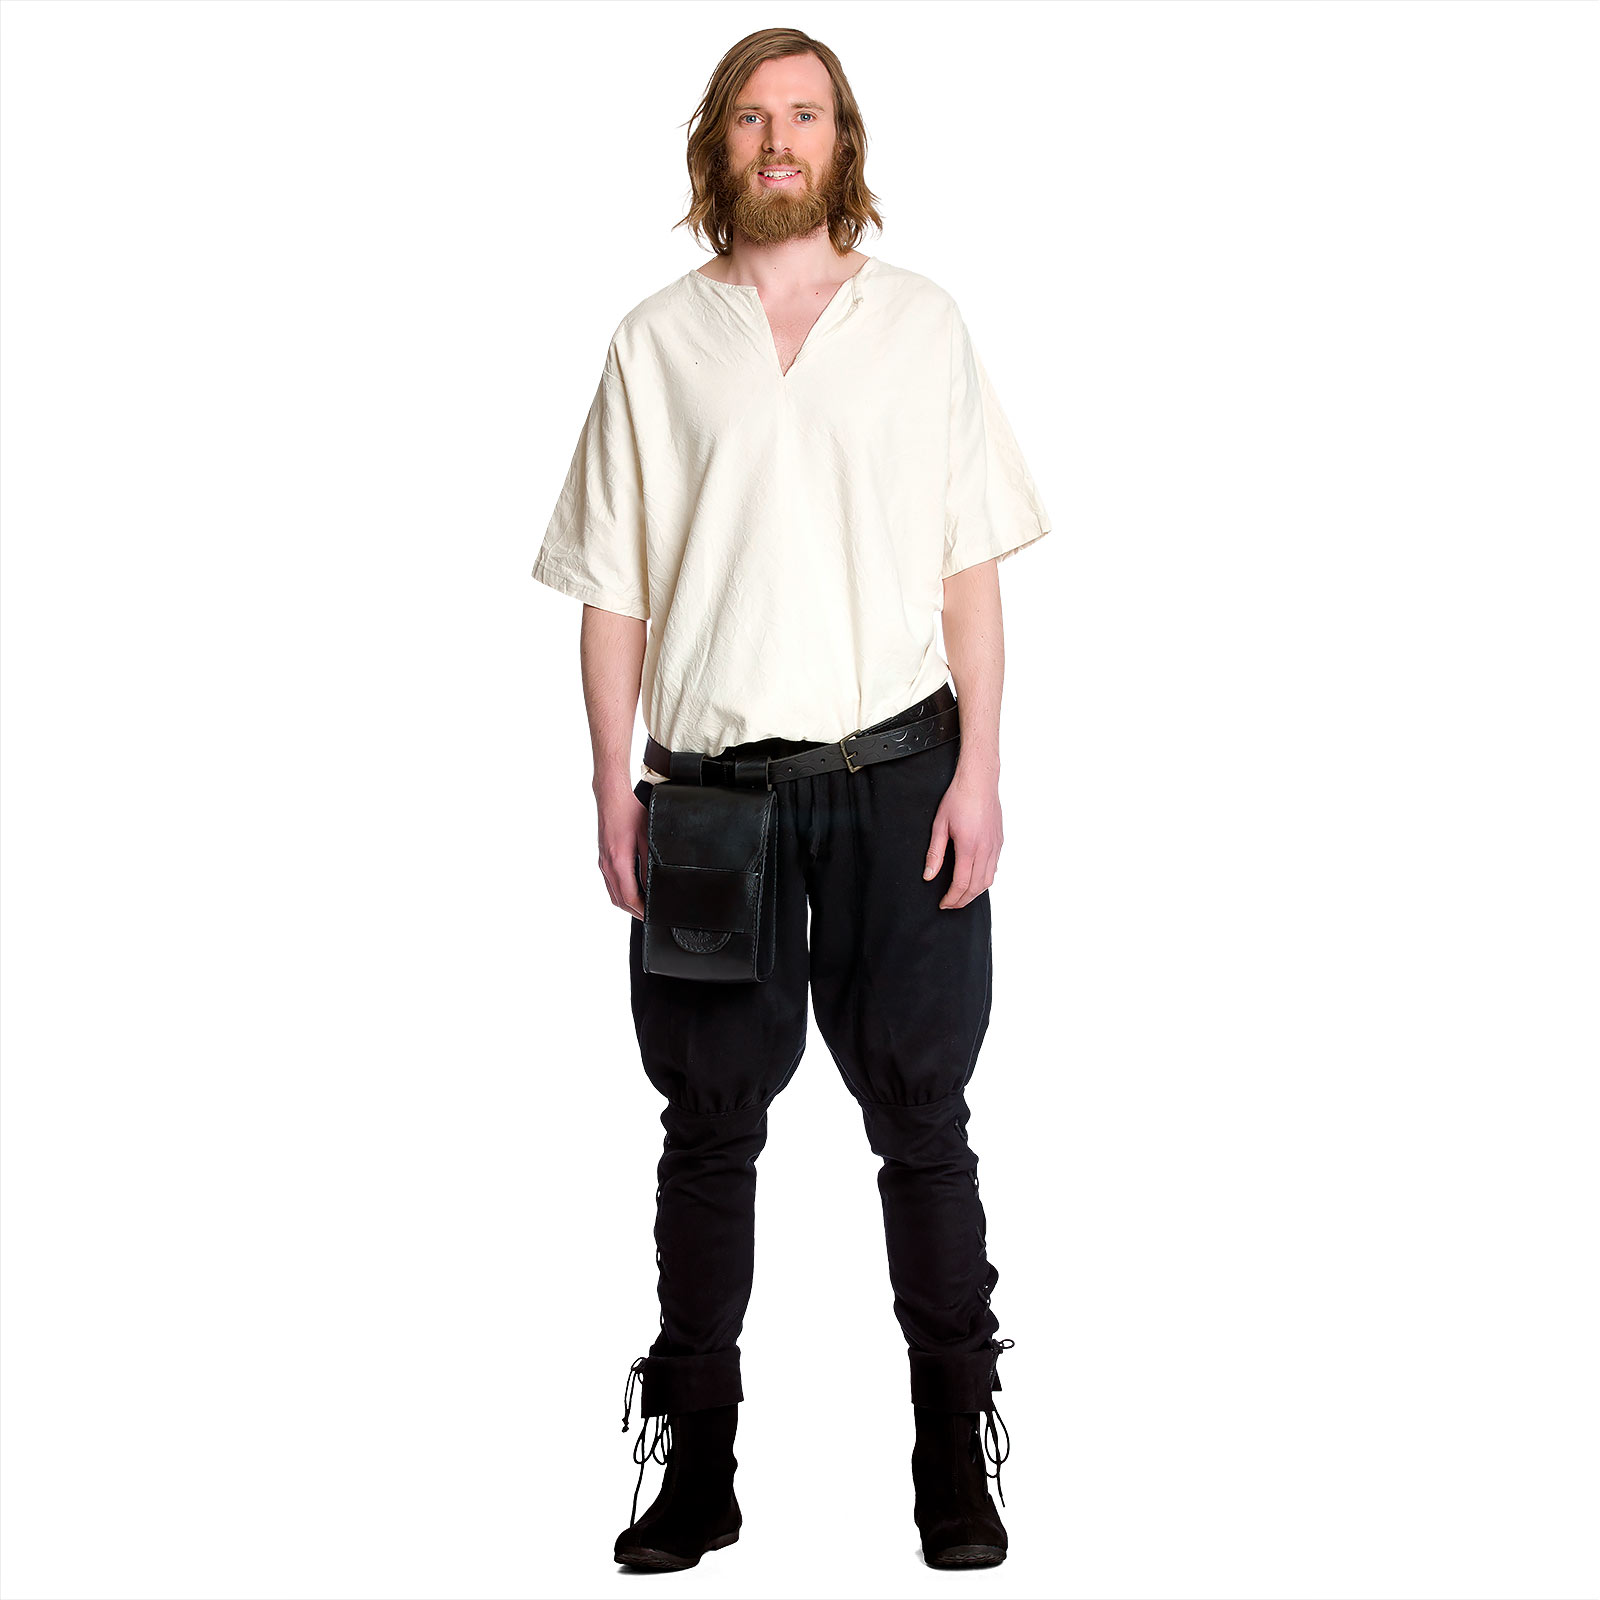 Middeleeuwse wollen broek met vetersluiting aan de onderbenen zwart